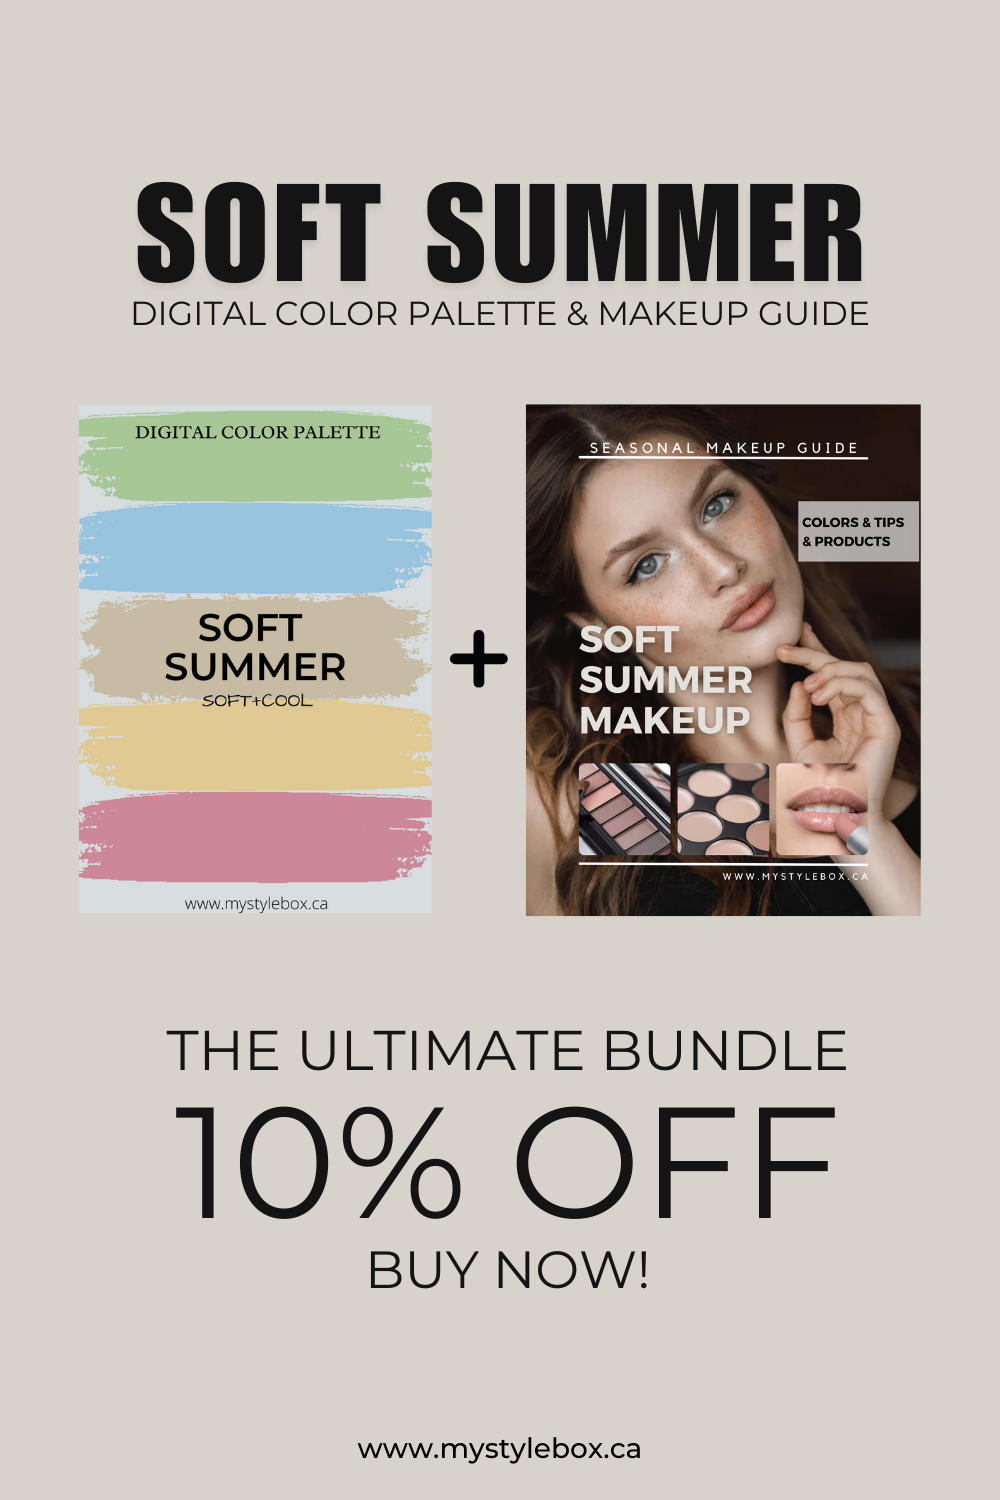 Soft Summer Digital Color Palette and Makeup Guide